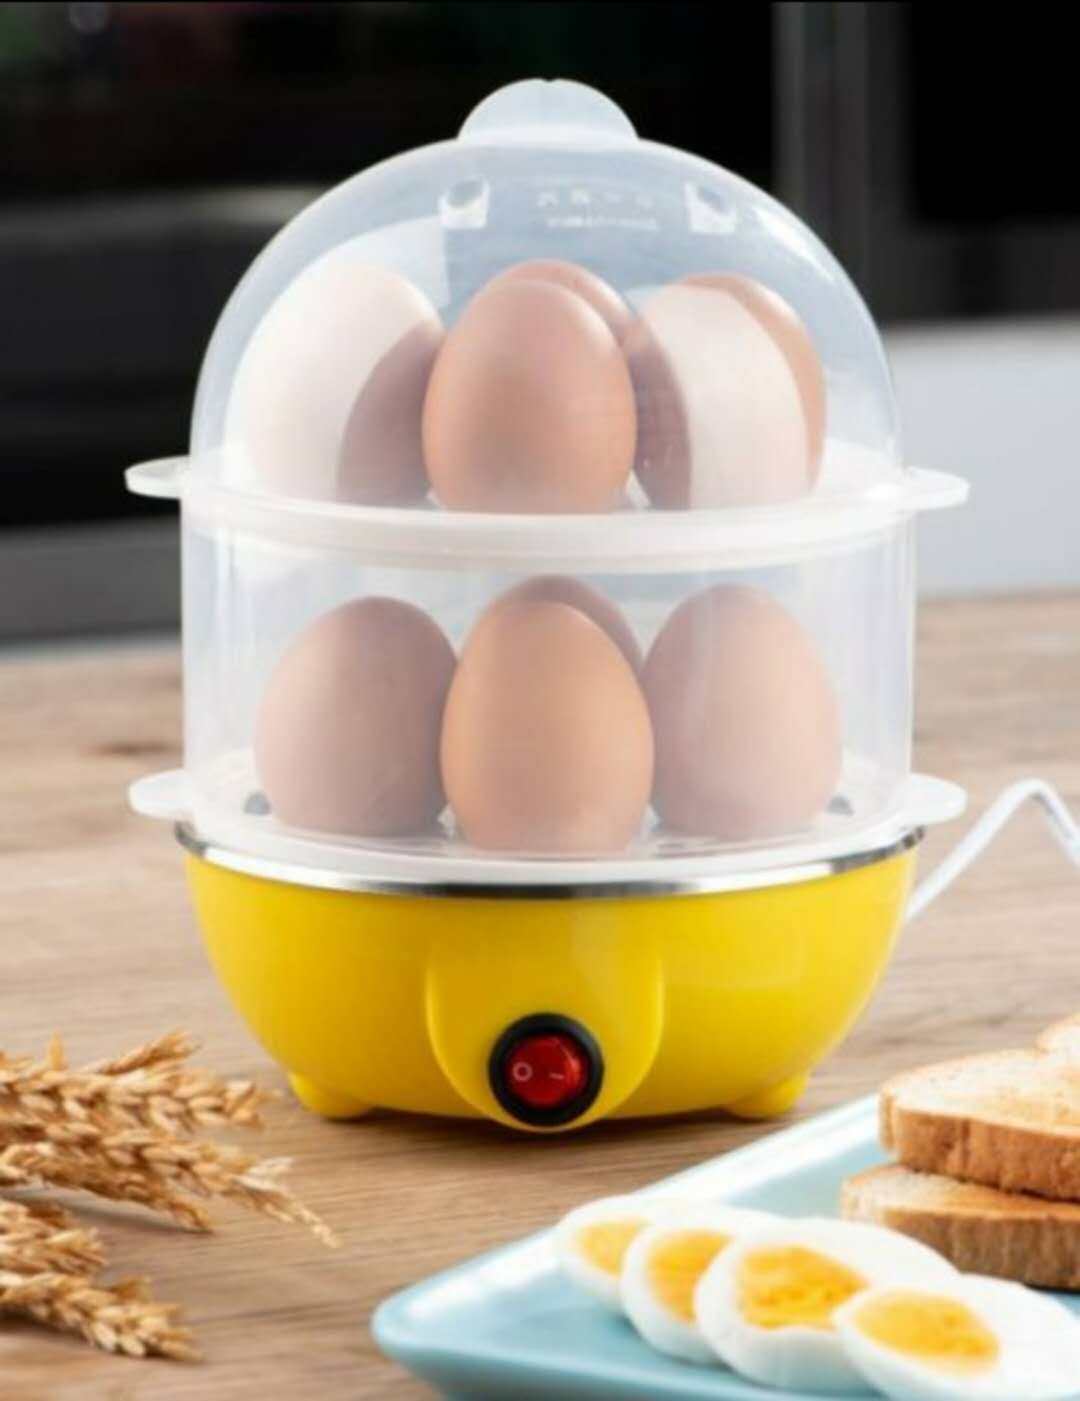 หม้อต้มไฟฟ้า หม้อต้มไข่ไฟฟ้า หม้อต้มอเนกประสงค์ Egg Cooker